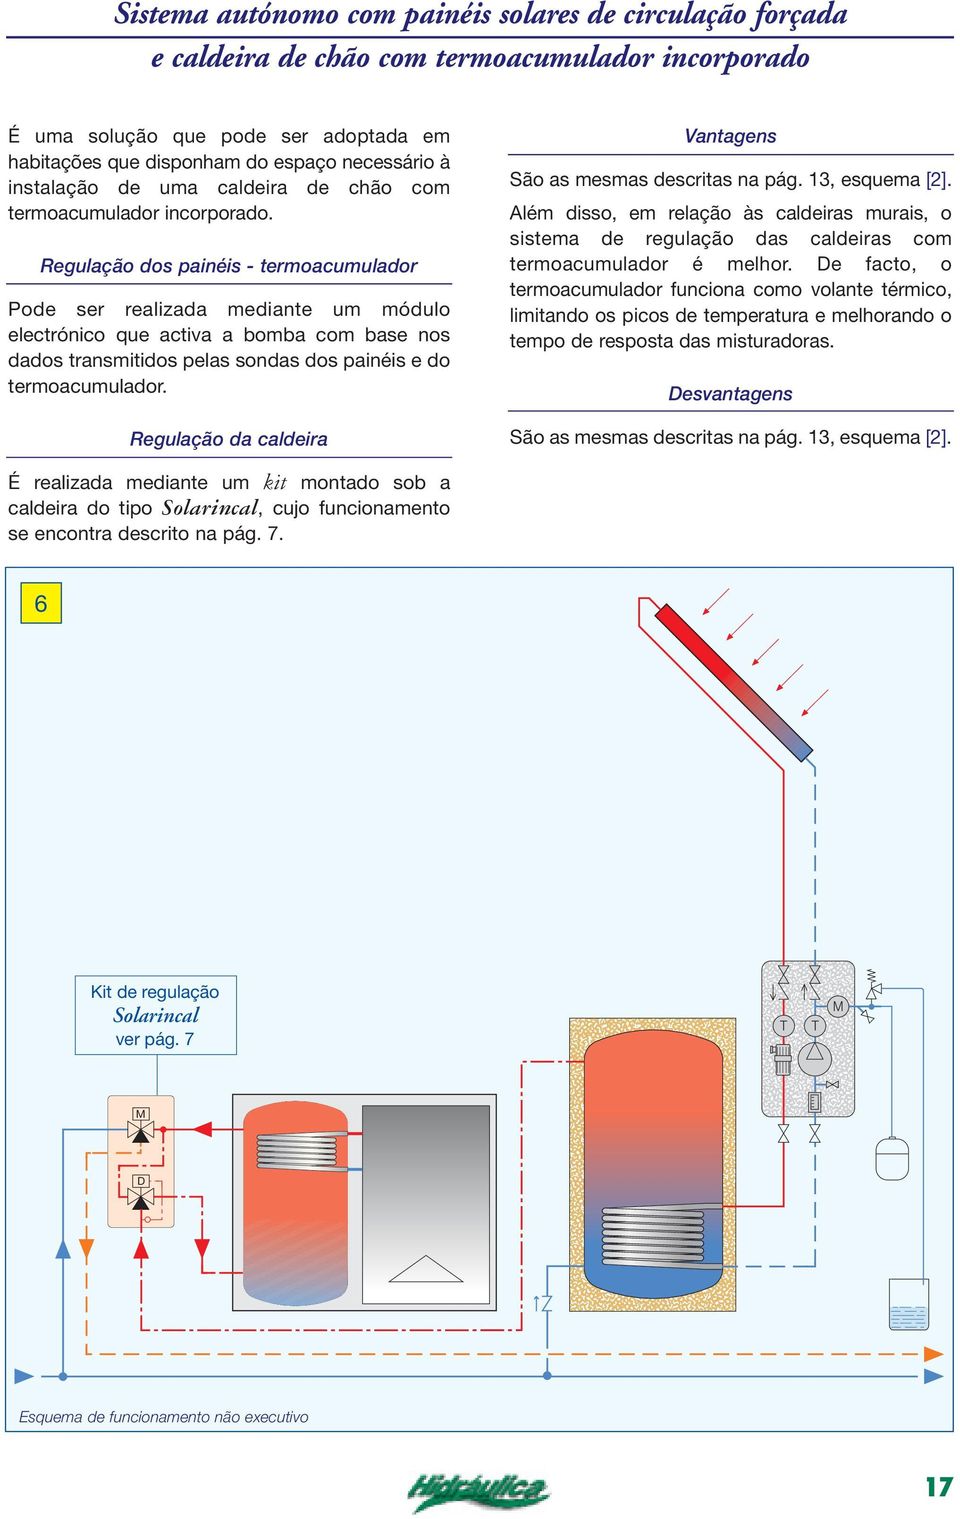 Regulação dos painéis - termoacumulador Pode ser realizada mediante um módulo electrónico que activa a bomba com base nos dados transmitidos pelas sondas dos painéis e do termoacumulador.